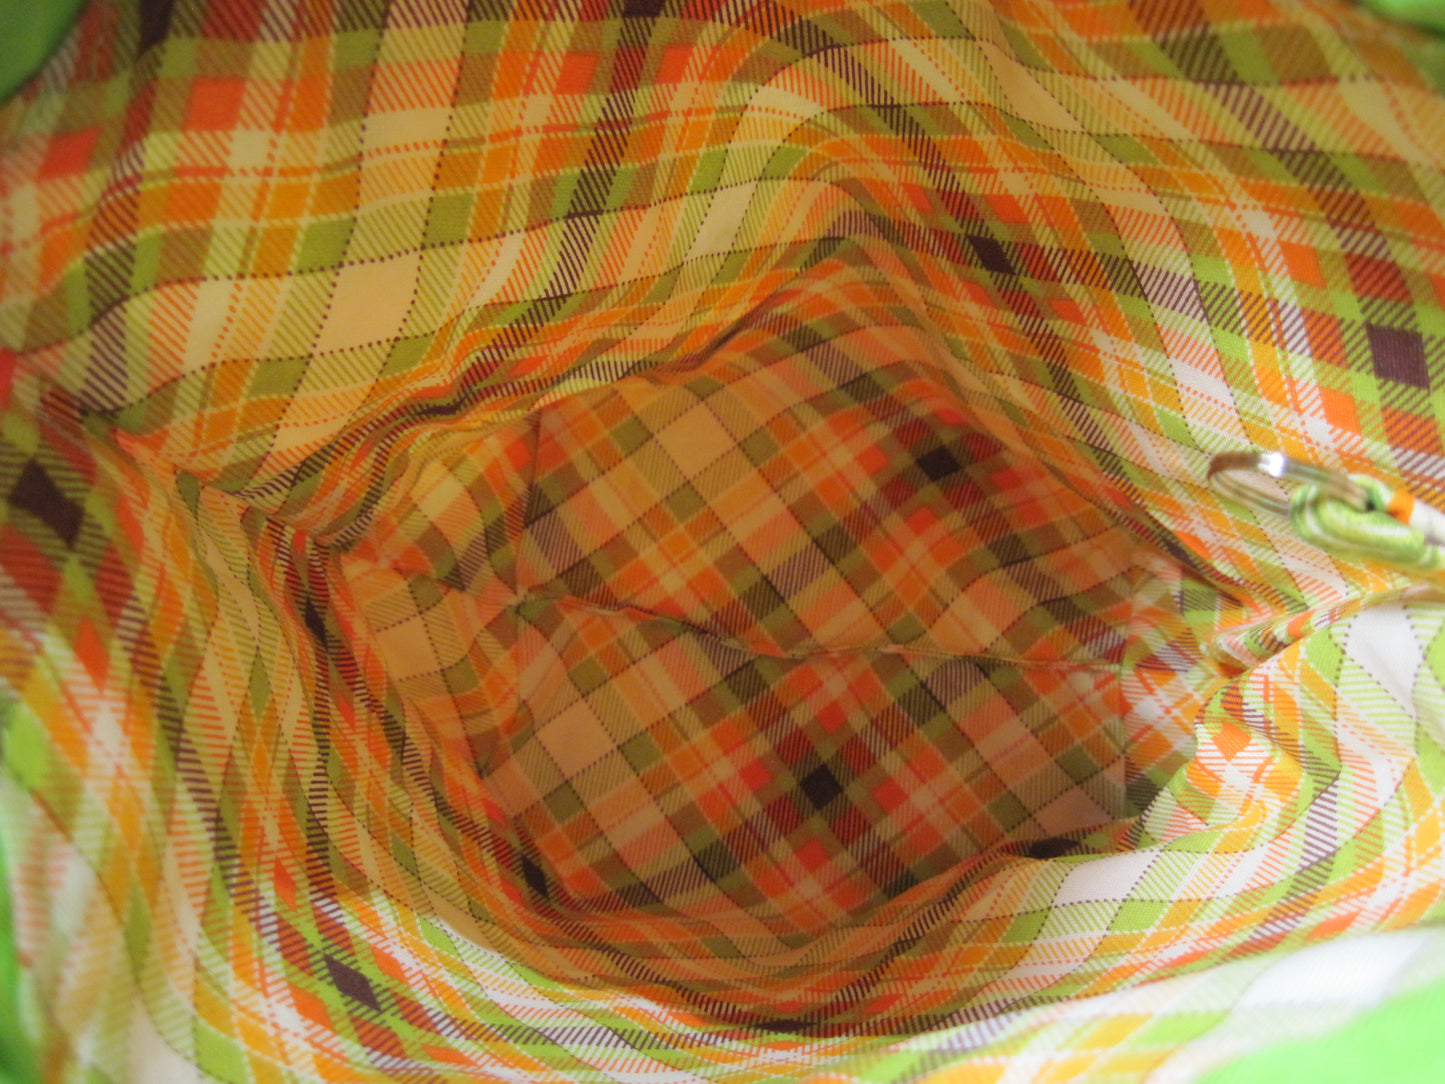 Small Drawstring ~ Pumpkin w/ plaid project bag